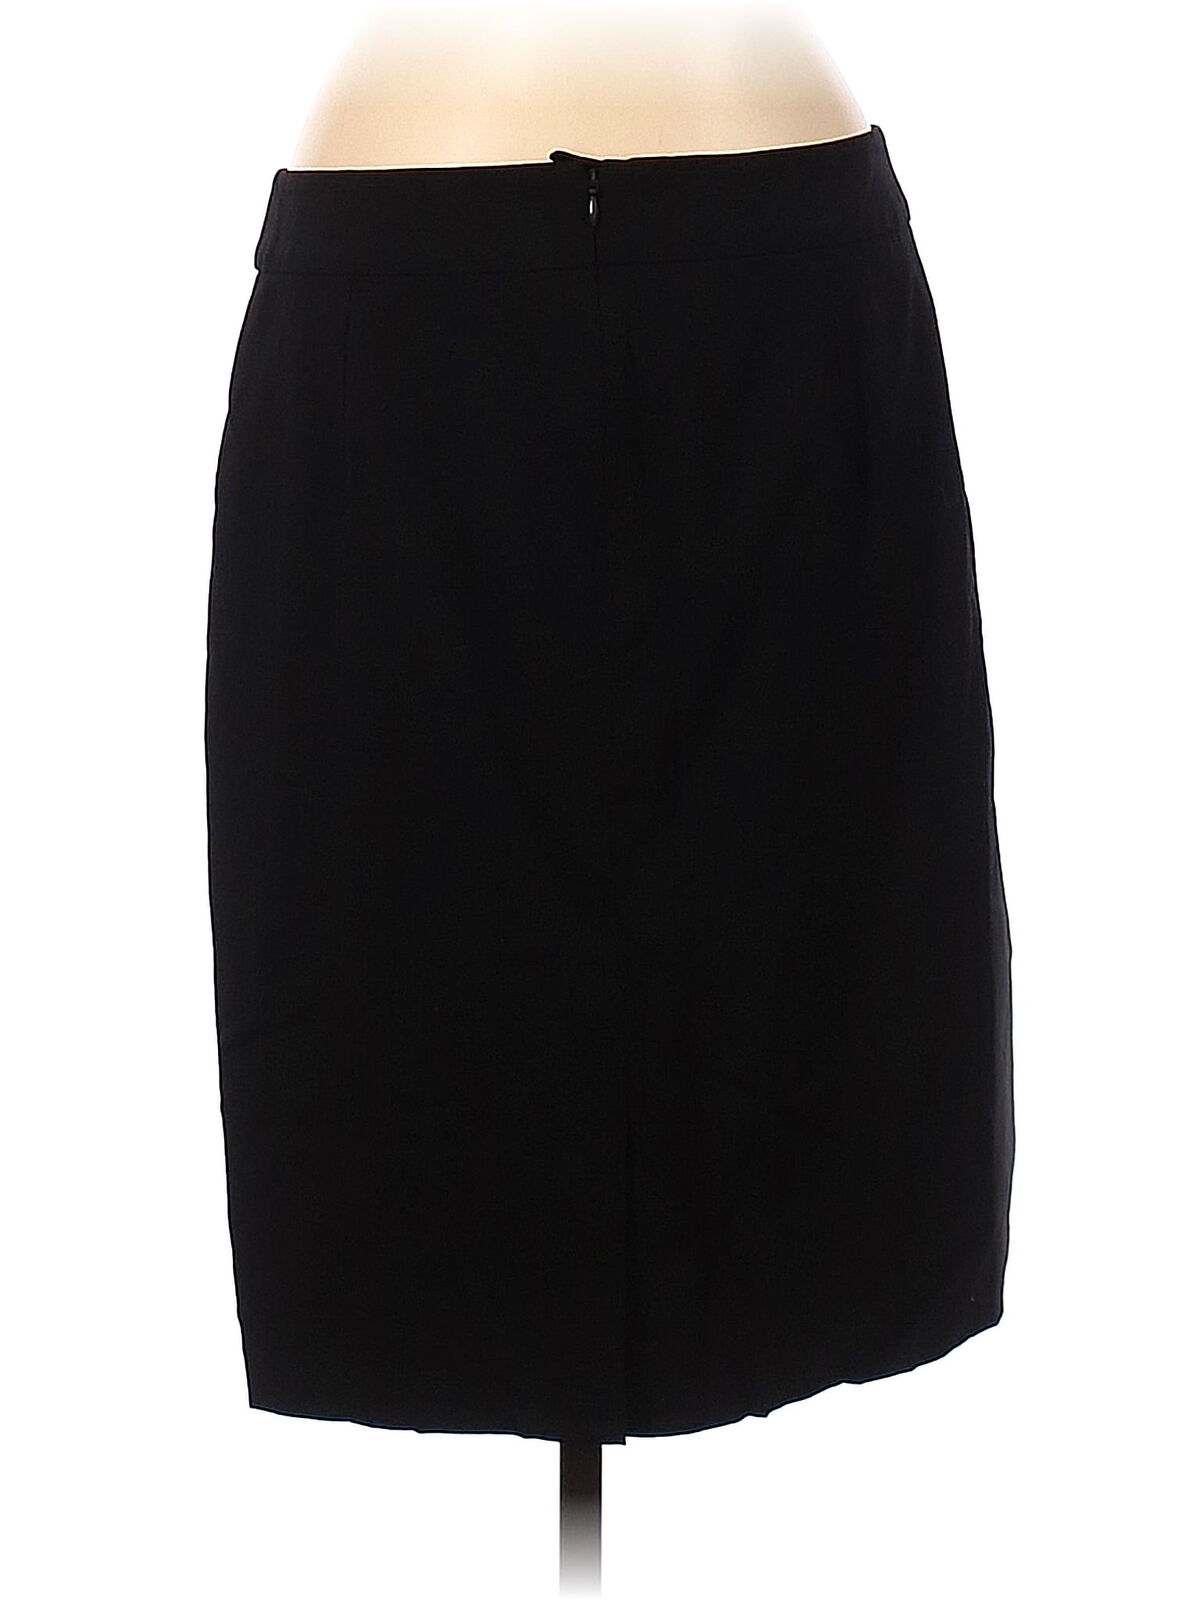 Armani Collezioni Women Black Casual Skirt 8 - image 2